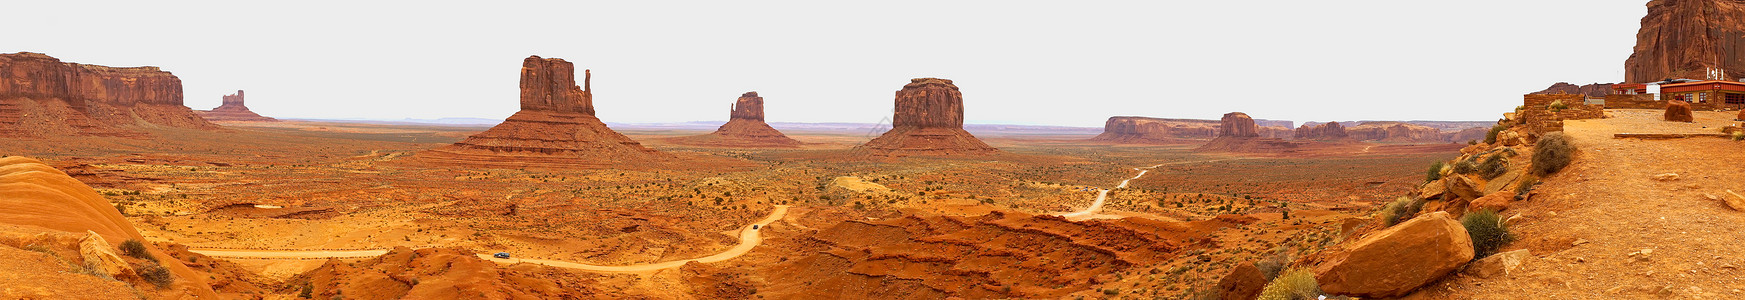 穿过纪念碑谷南荒漠的丘陵峡谷和草丛的碎石路环图片